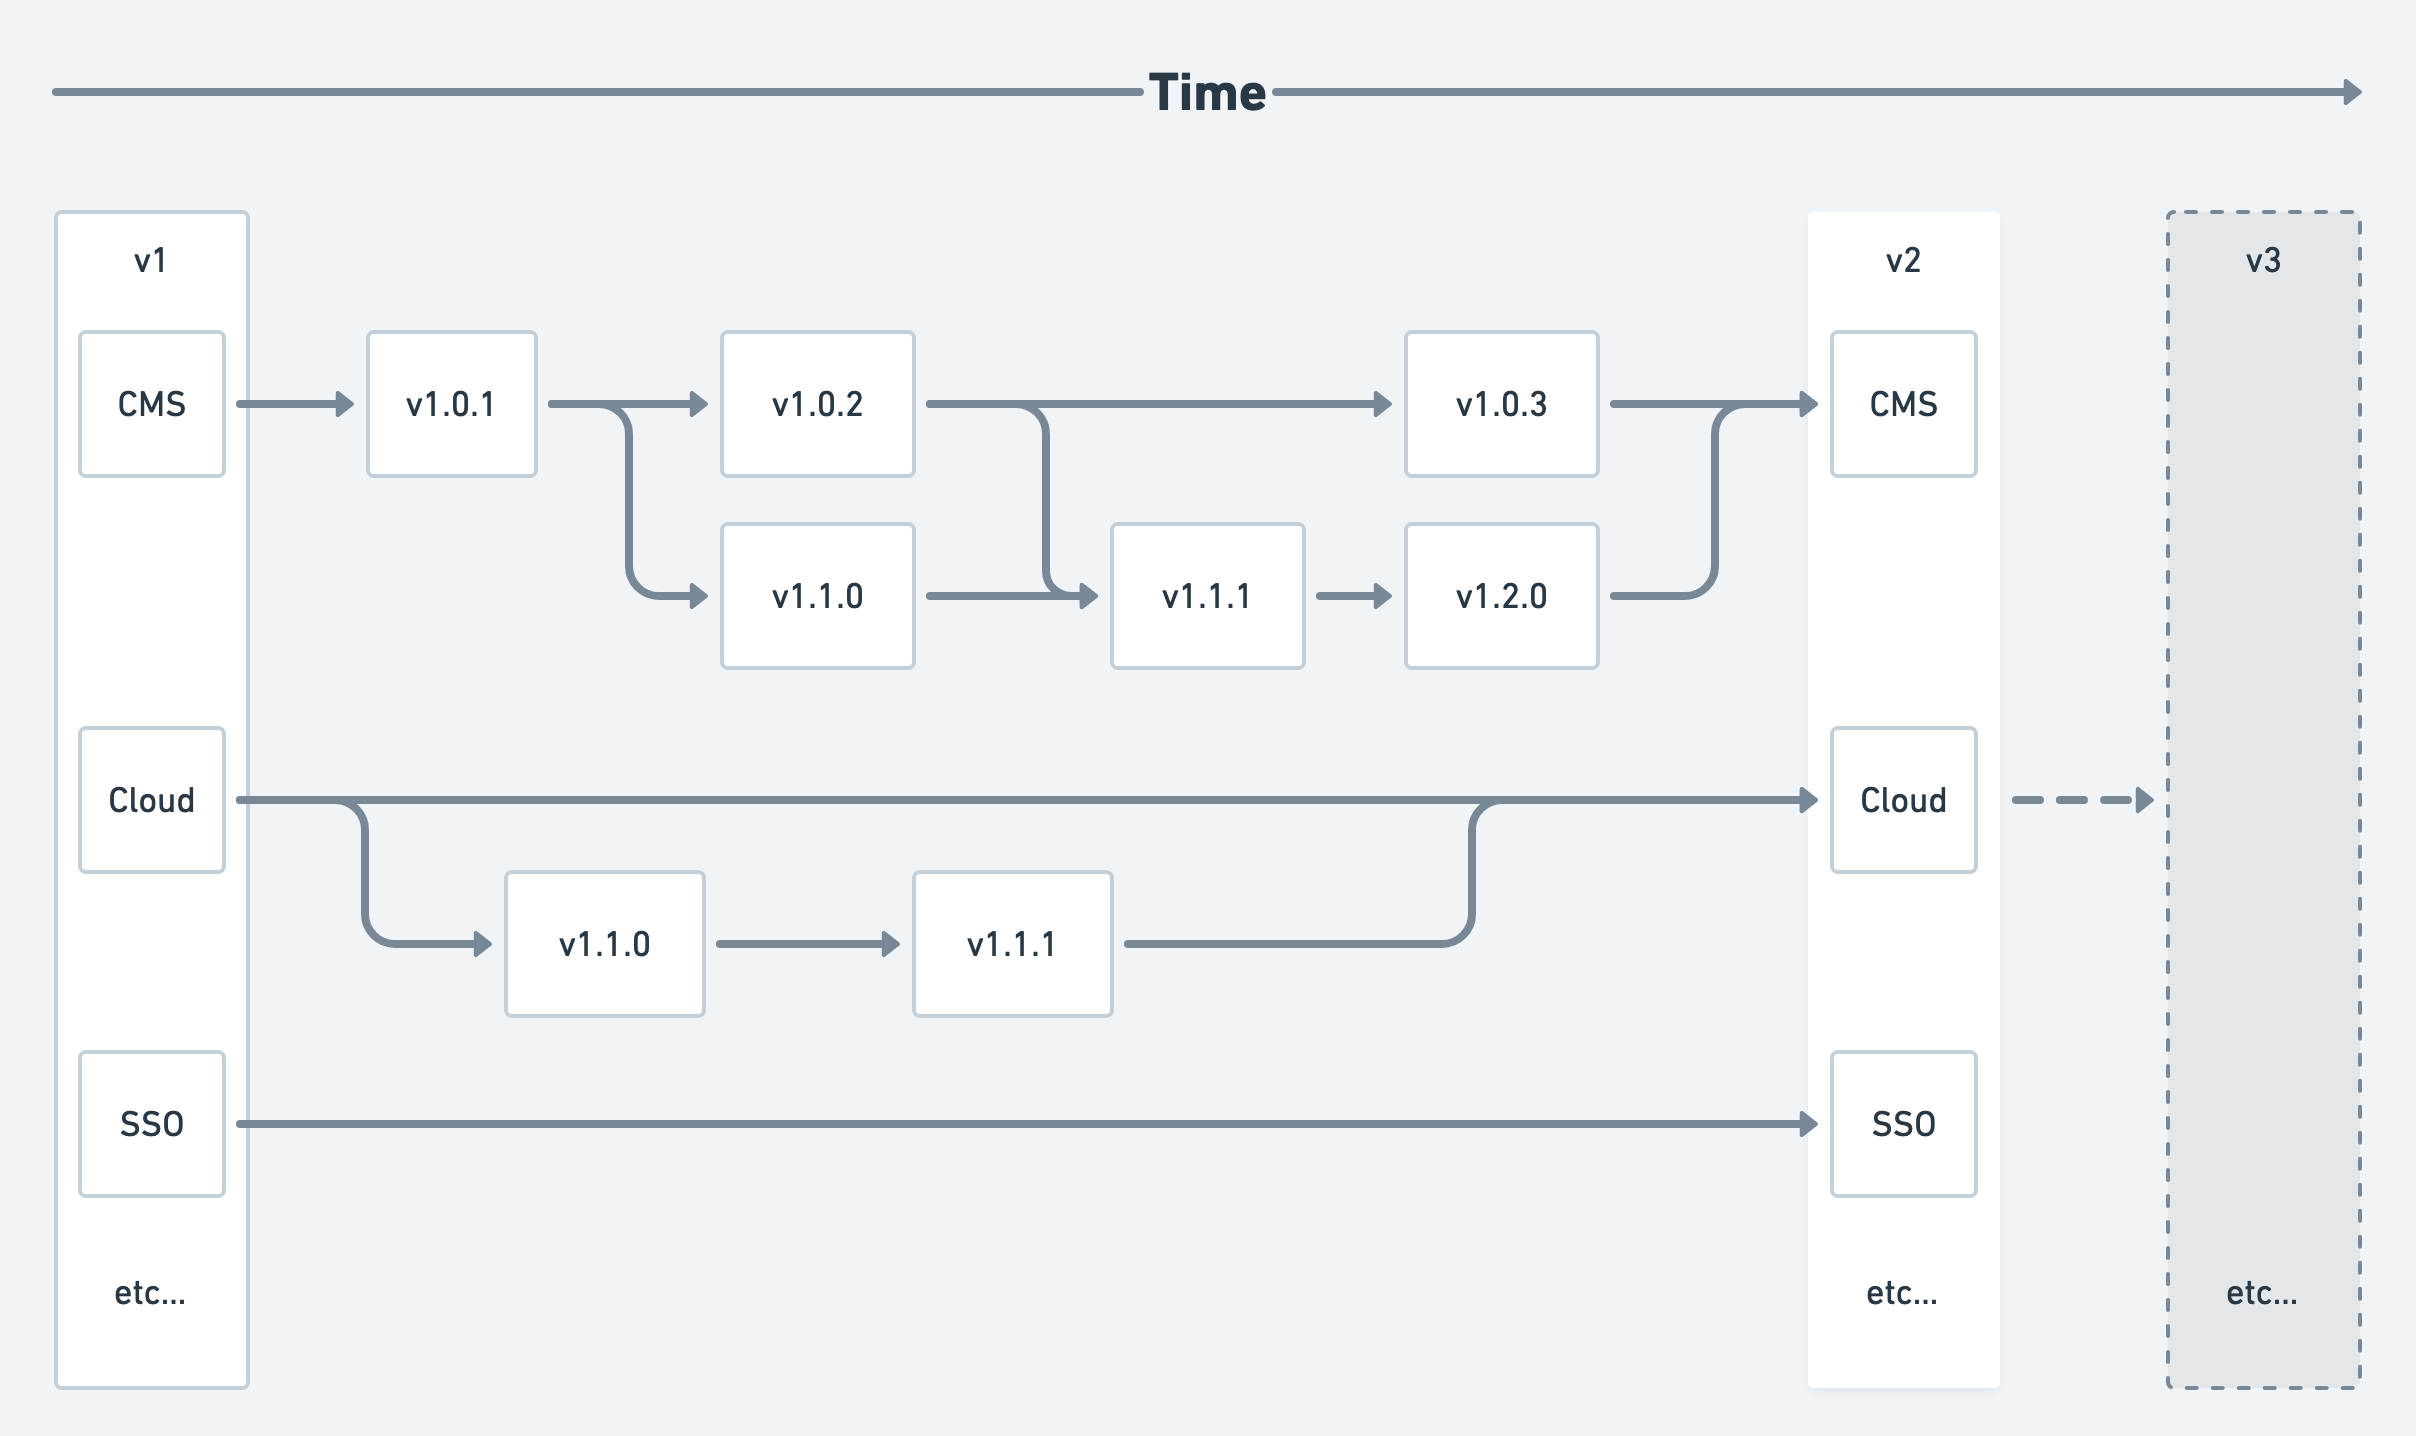 Release timeline diagram